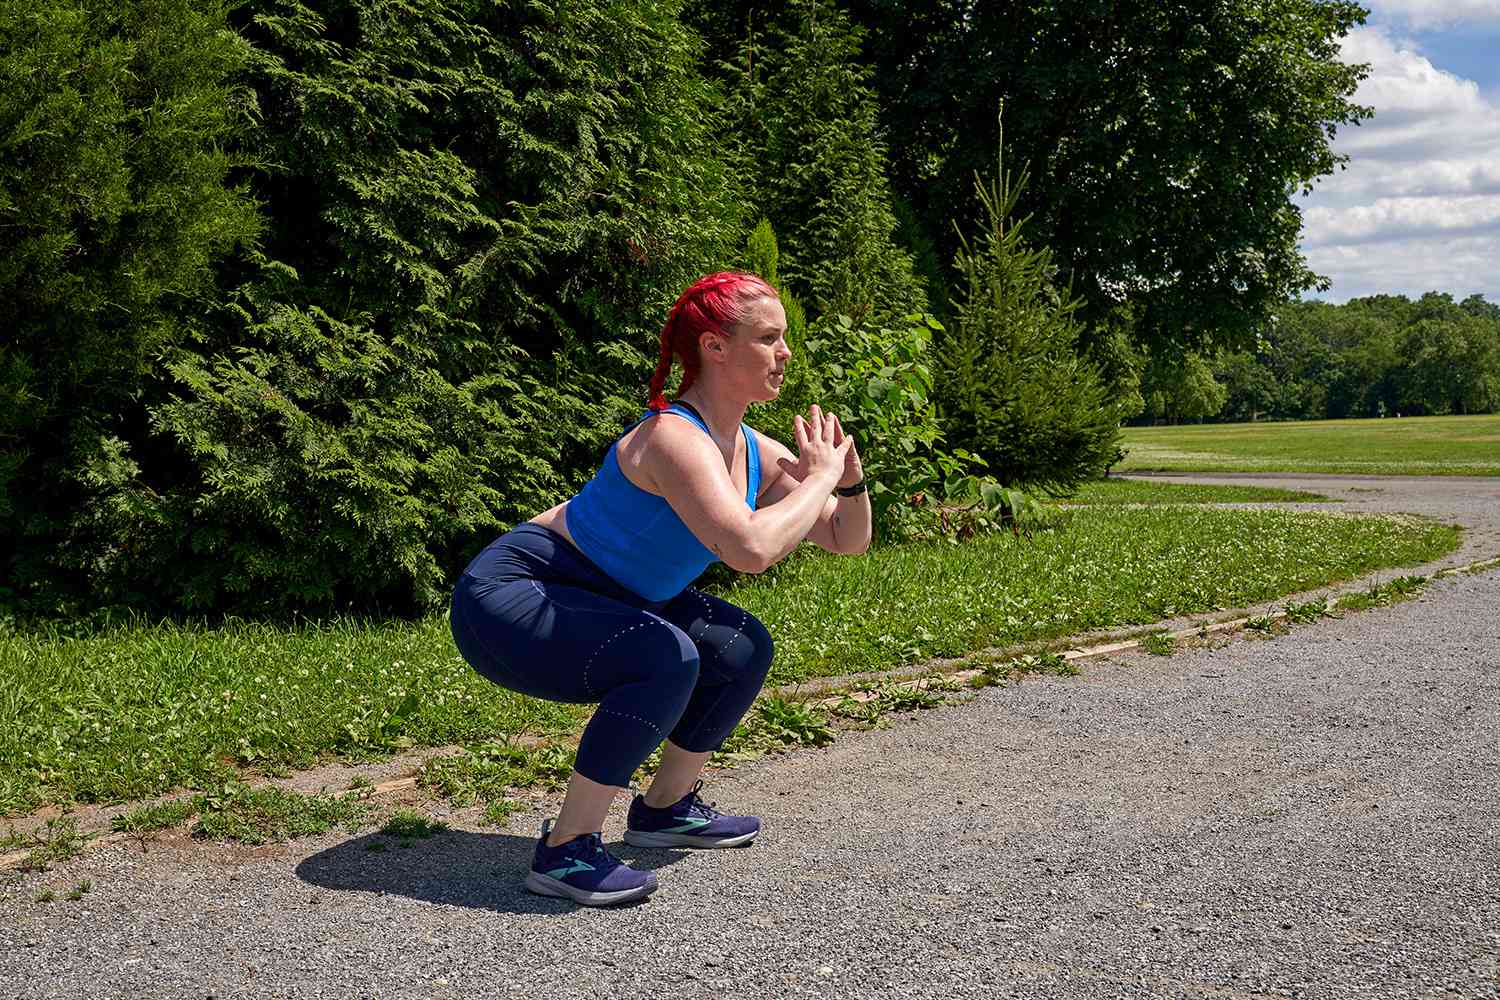 Vrouw die squats uitvoert tijdens het lopen